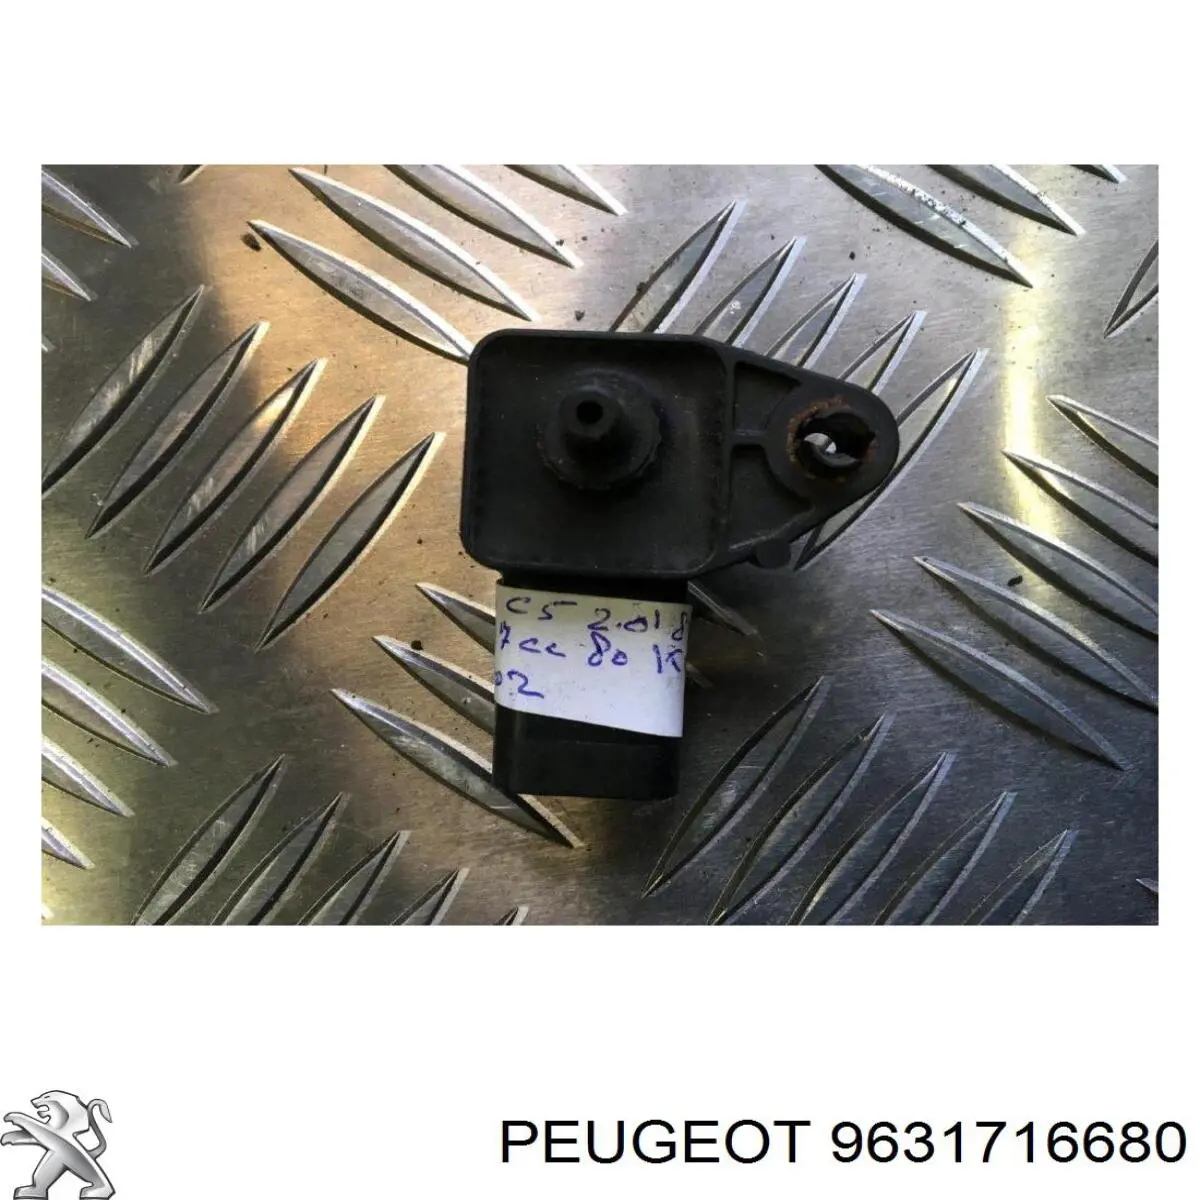 9631716680 Peugeot/Citroen sensor de pressão no coletor de admissão, map